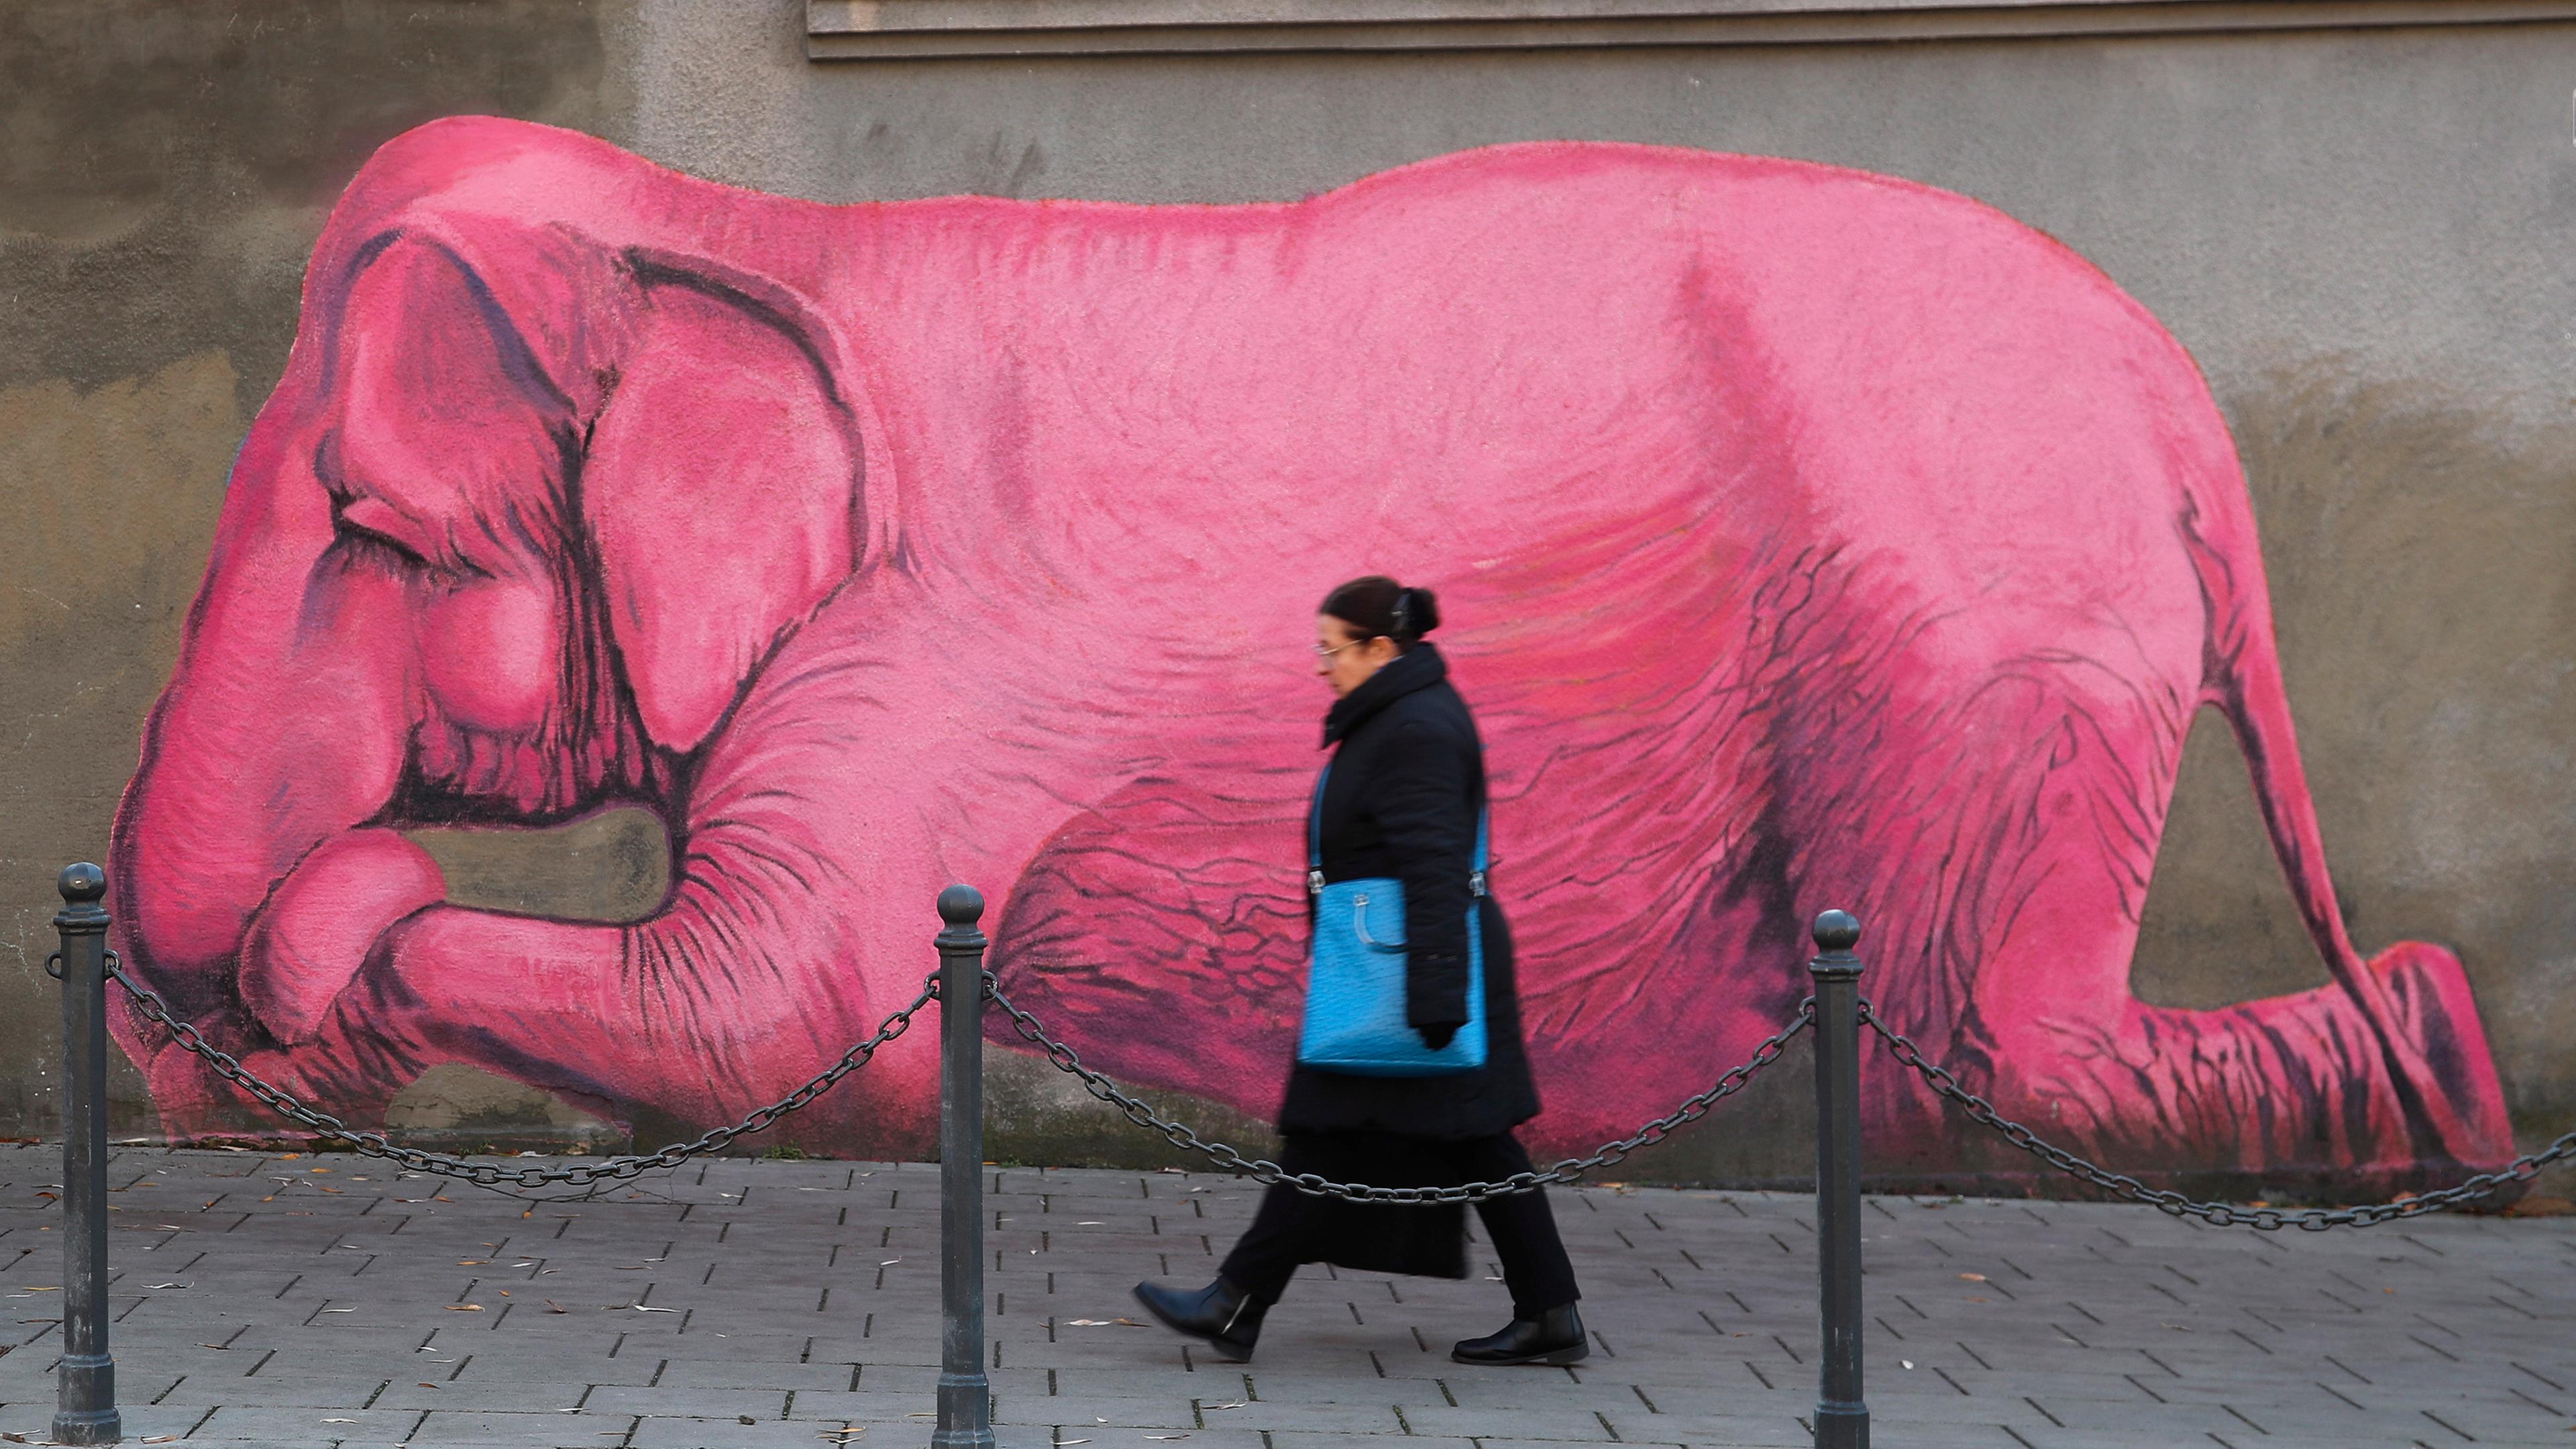 Eine Mauer, auf die ein großer pinker Elefant gemalt wurde